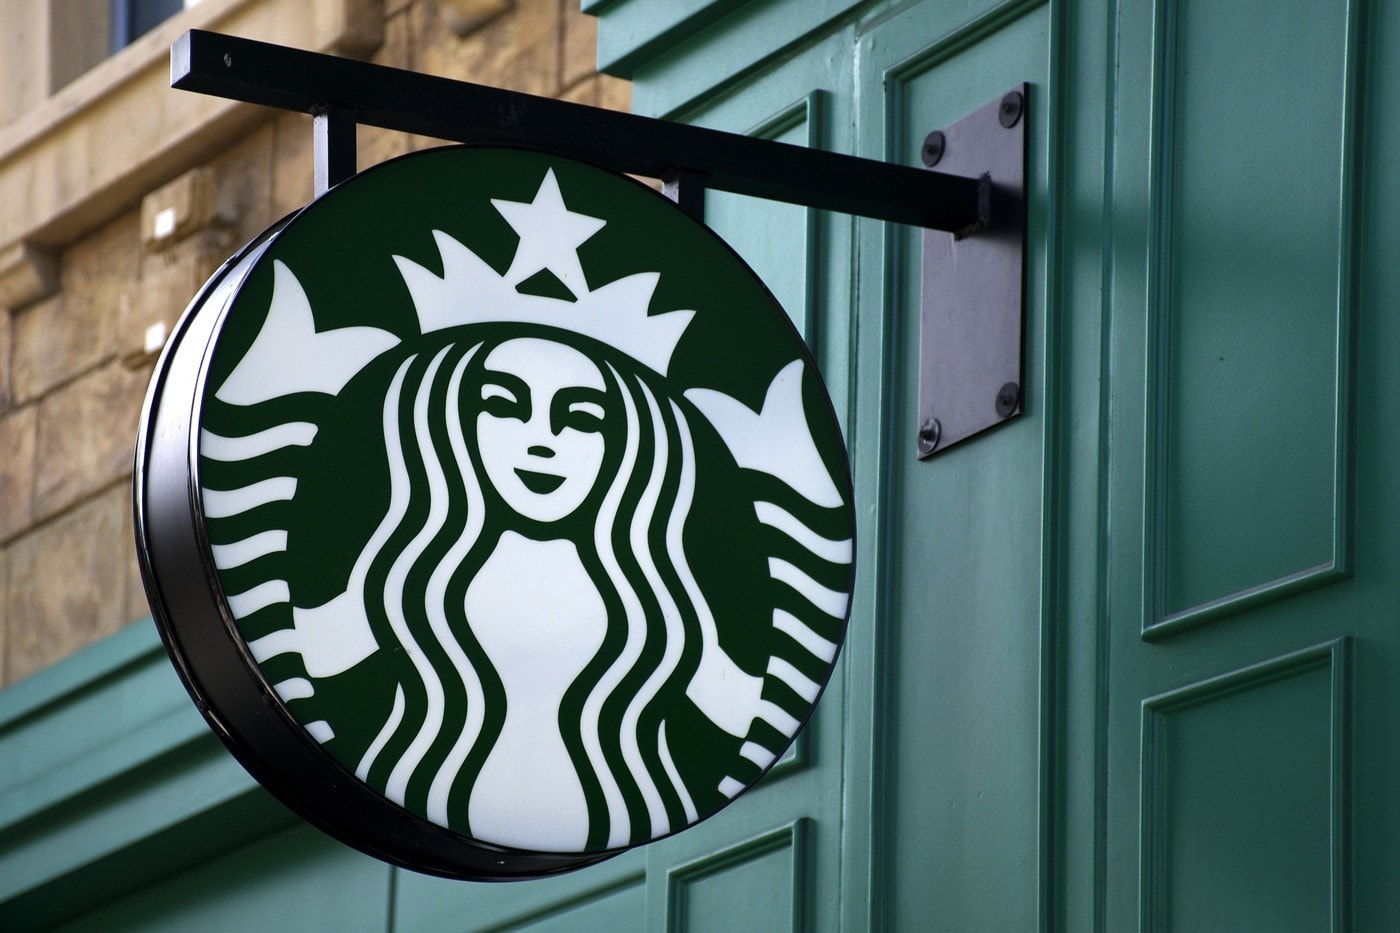 Starbucks Sign Green Black White